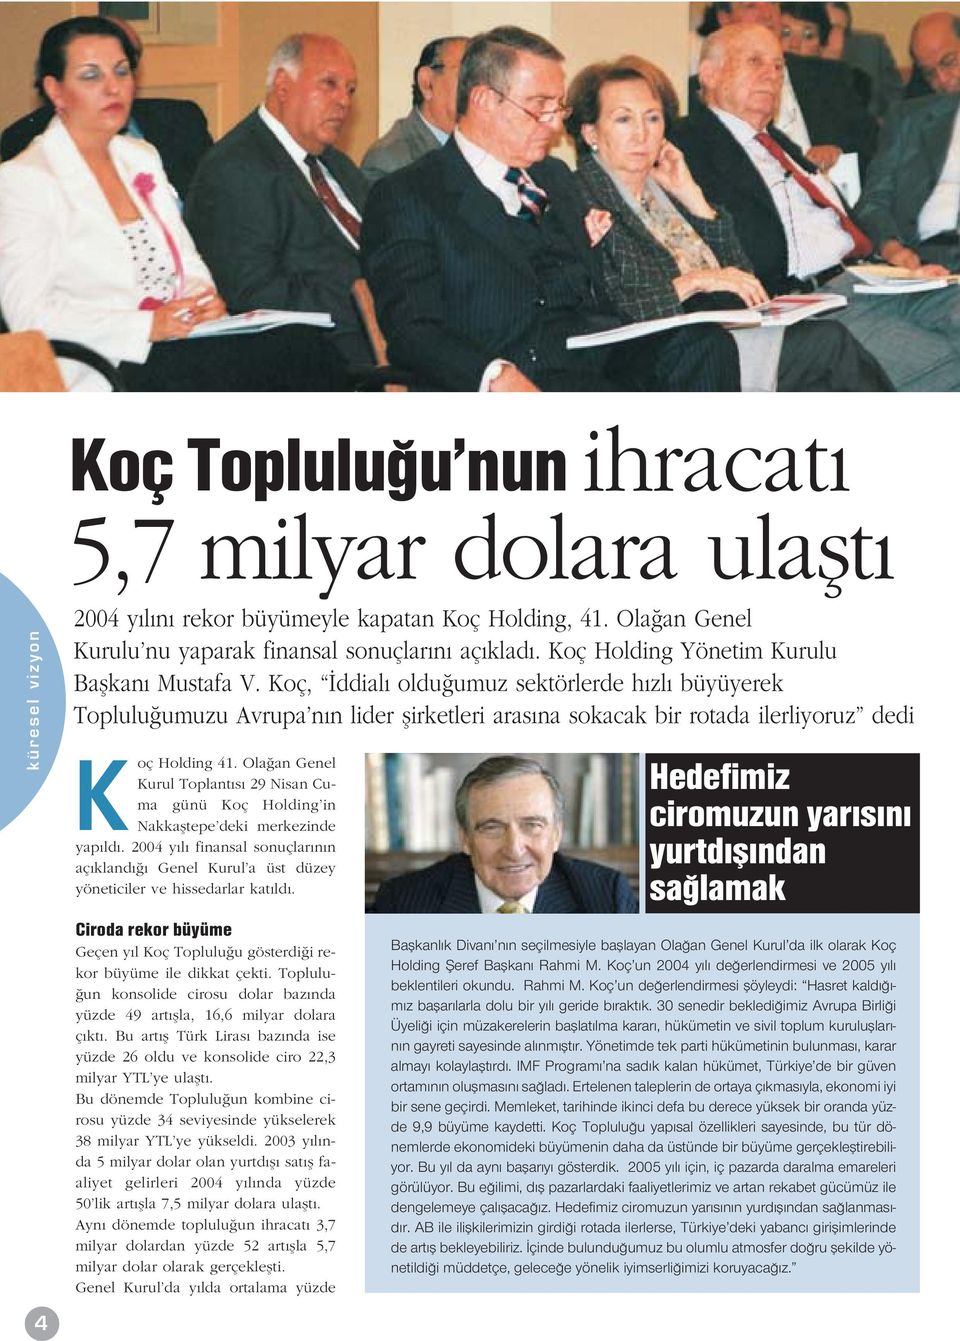 Ola an Genel Kurul Toplant s 29 Nisan Cuma günü Koç Holding in Nakkafltepe deki merkezinde yap ld. 2004 y l finansal sonuçlar n n aç kland Genel Kurul a üst düzey yöneticiler ve hissedarlar kat ld.